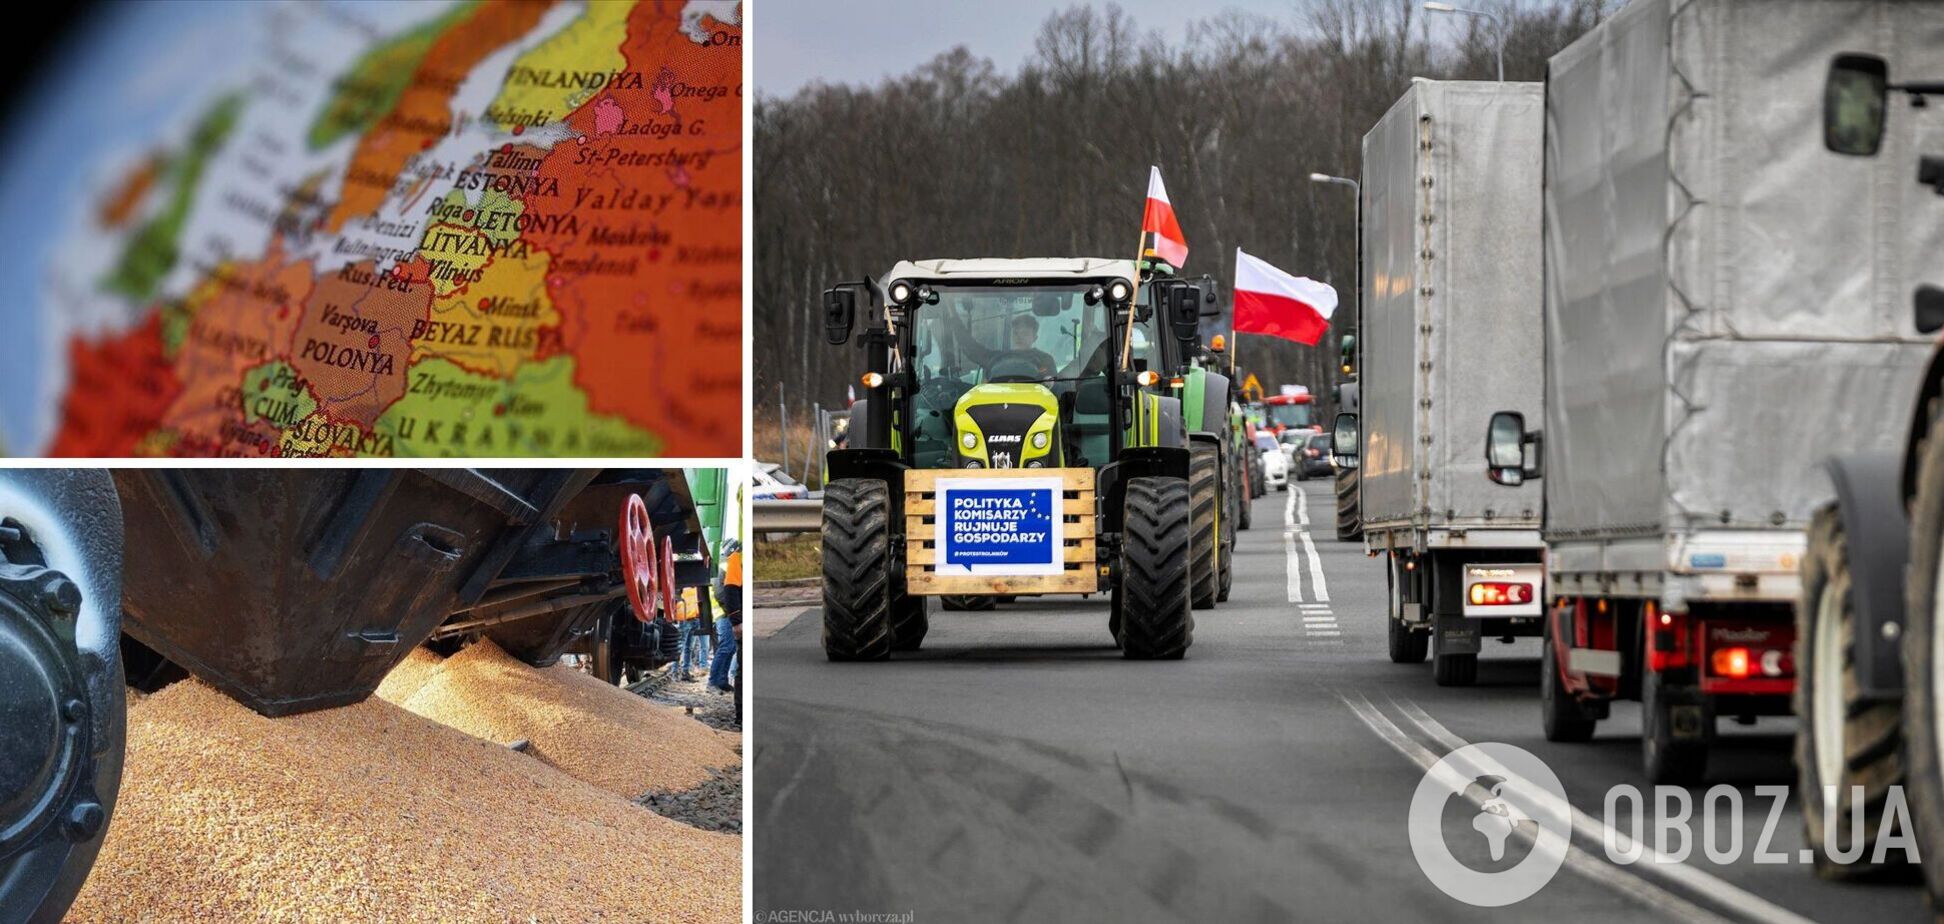 Граница Литвы и Польши тоже будет заблокирована